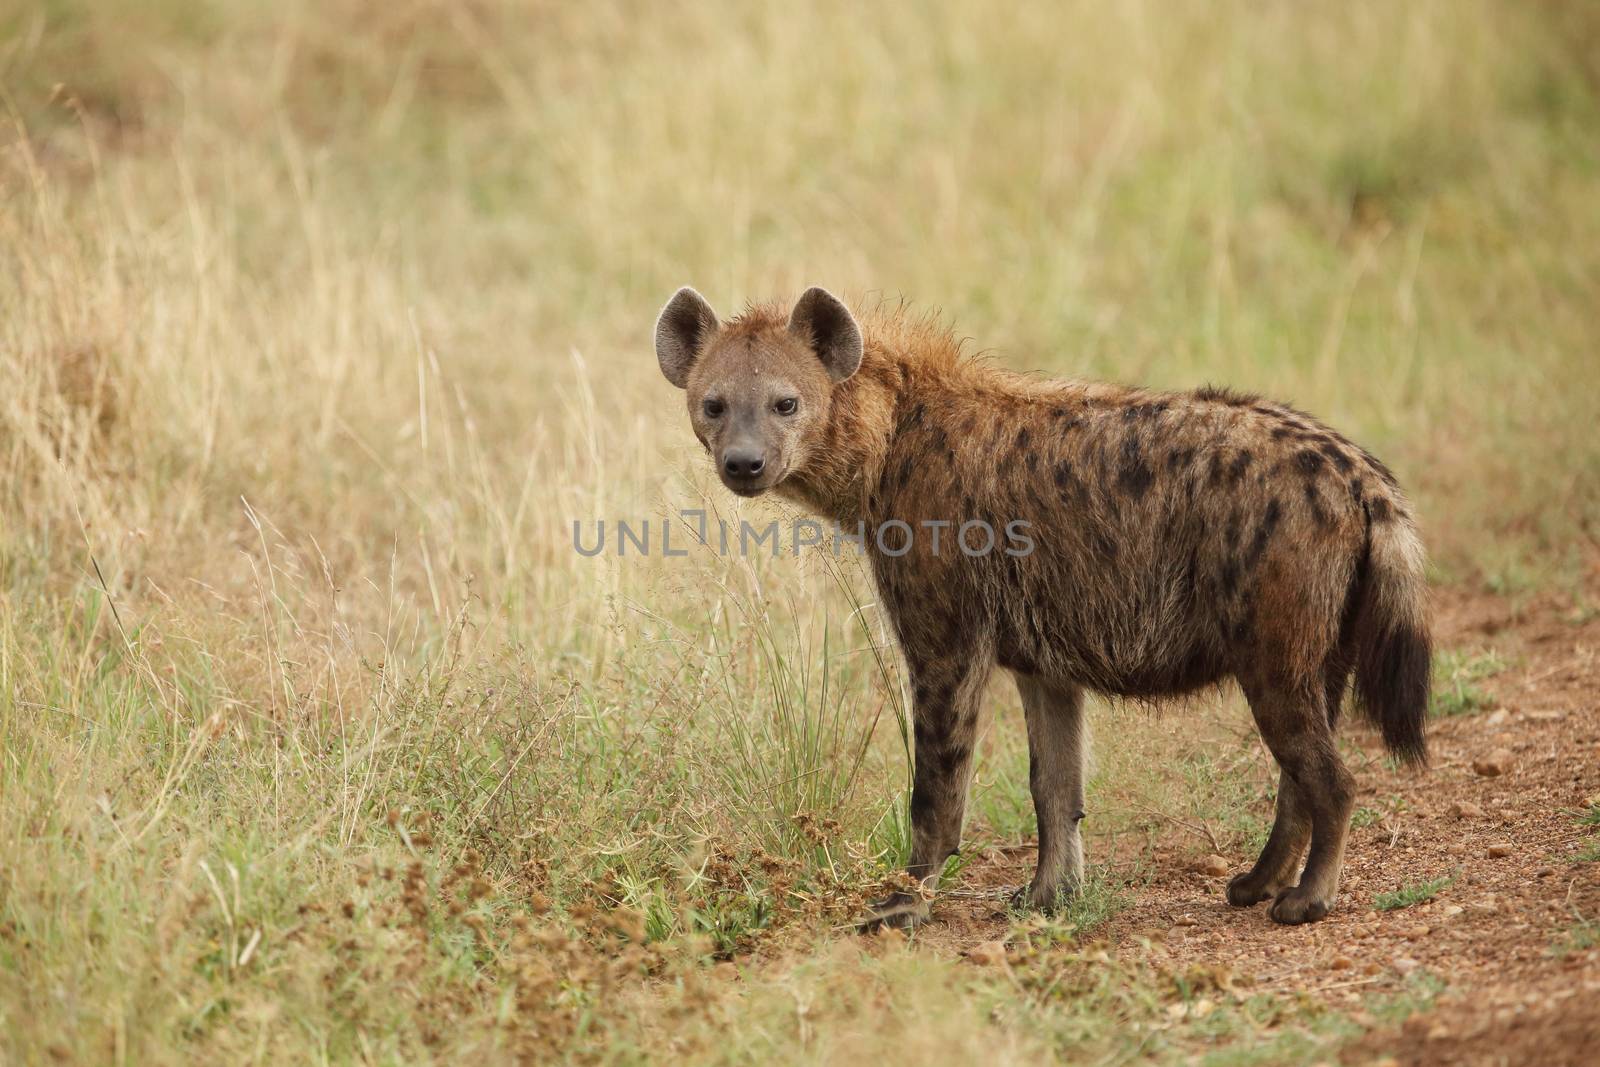 Hyena in the wilderness by ozkanzozmen